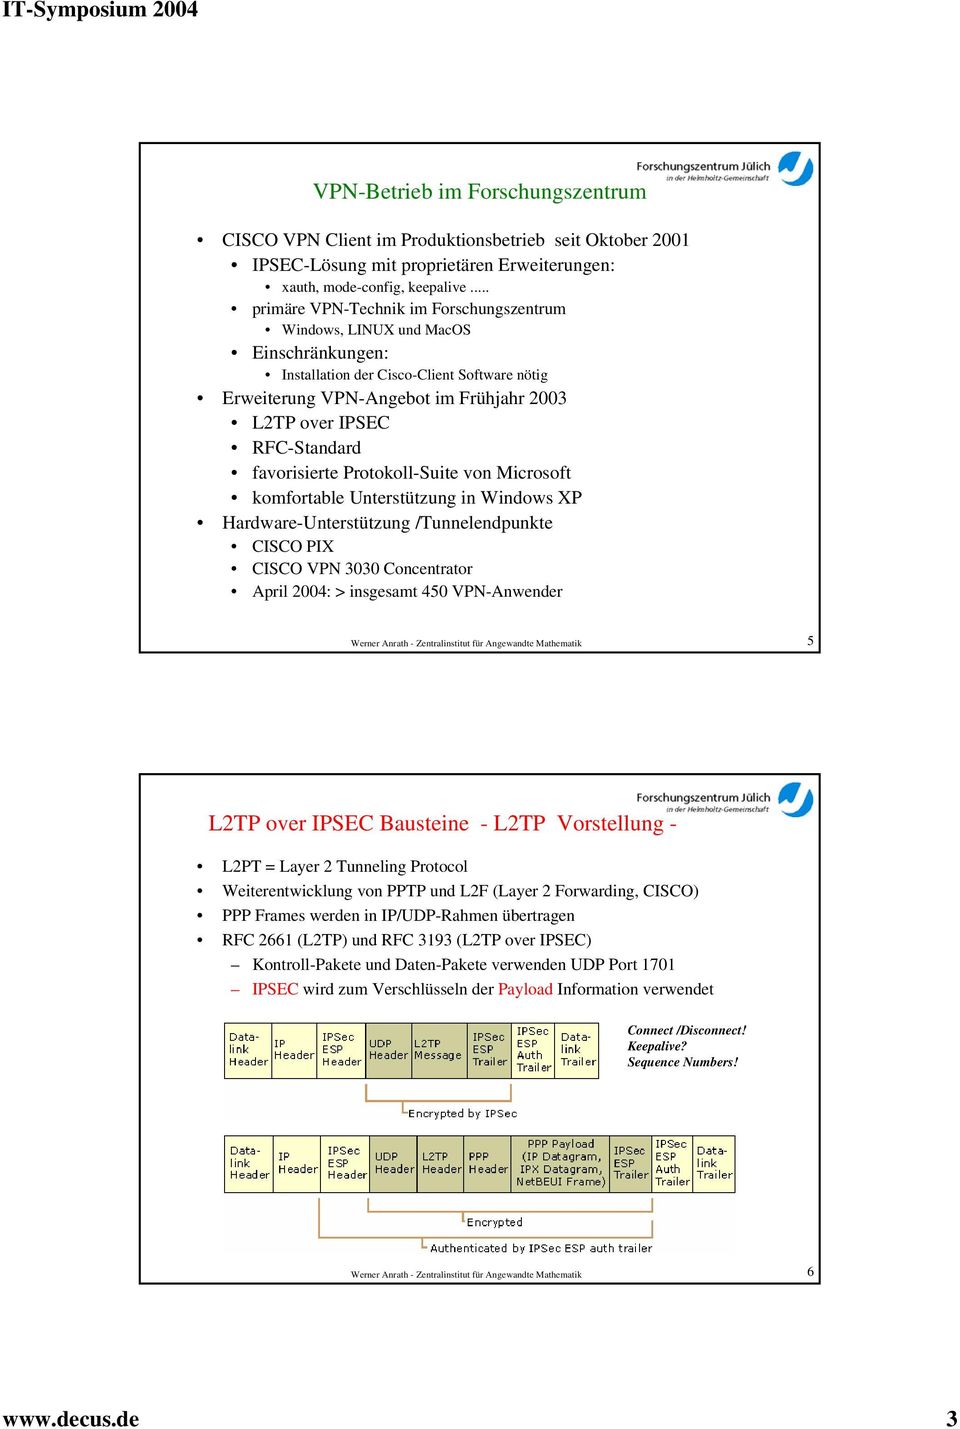 RFC-Standard favorisierte Protokoll-Suite von Microsoft komfortable Unterstützung in Windows XP Hardware-Unterstützung /Tunnelendpunkte CISCO PIX CISCO VPN 3030 Concentrator April 2004: > insgesamt